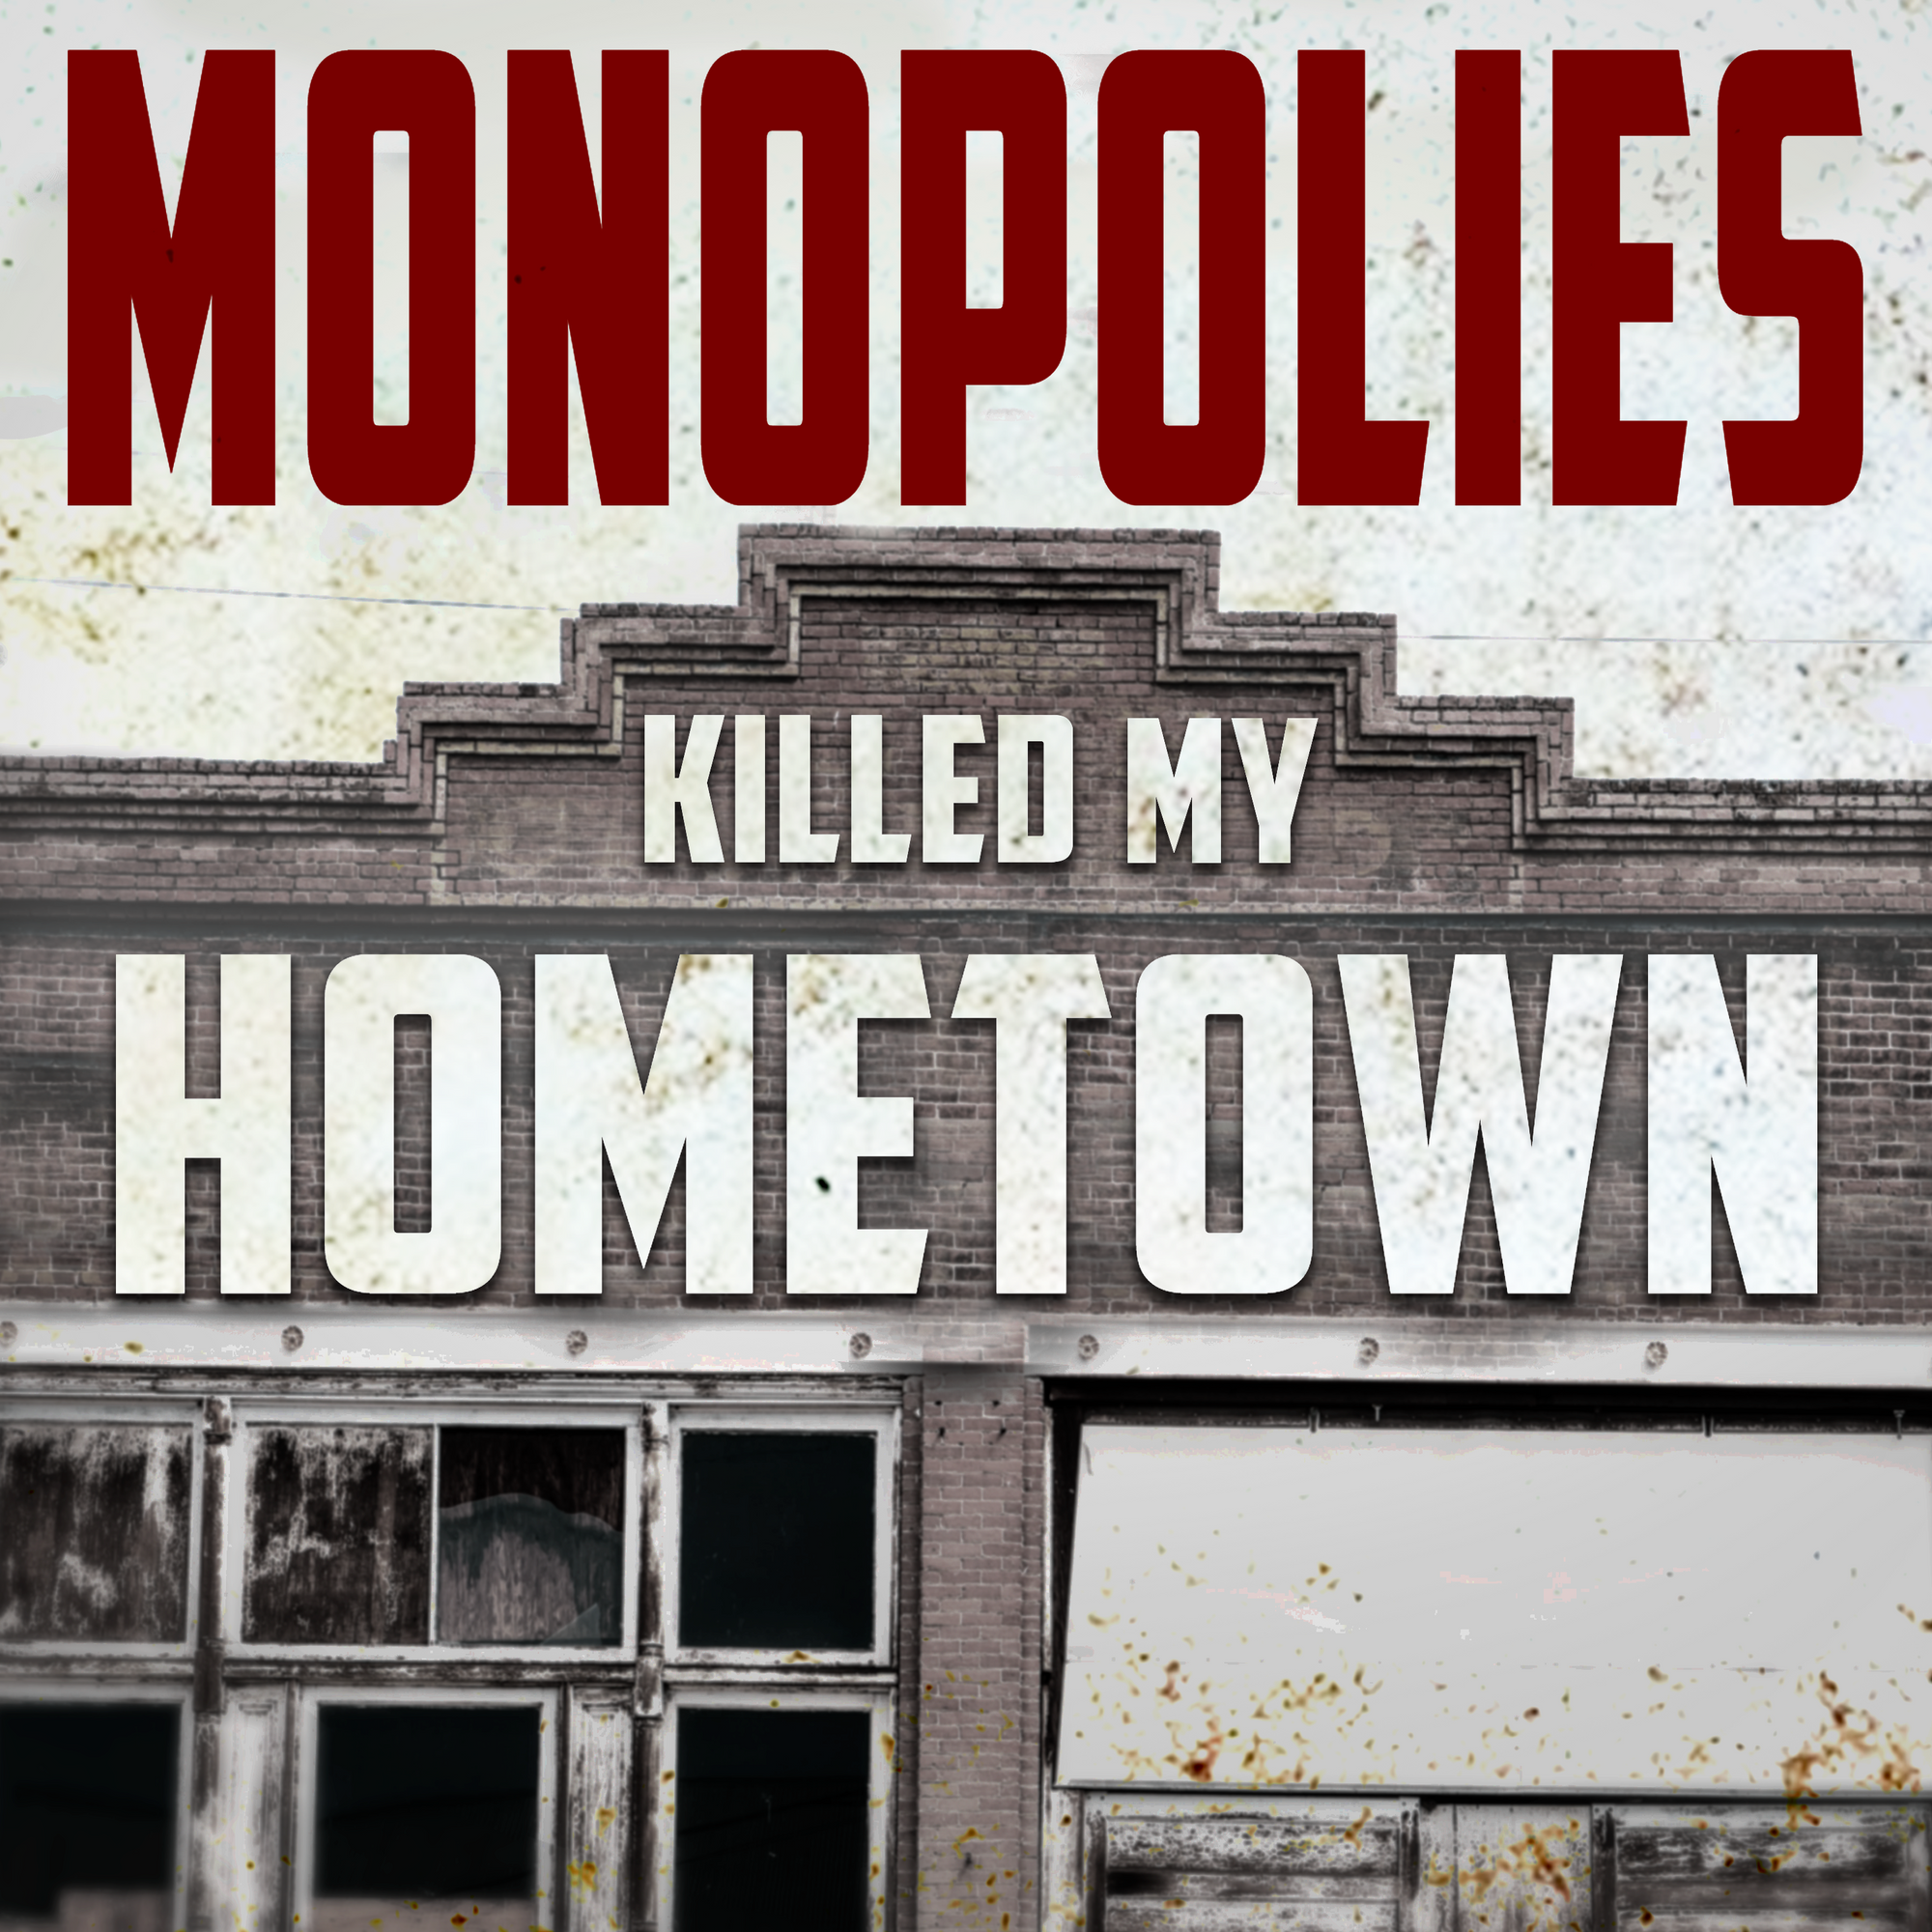 Monopolies Killed My Hometown